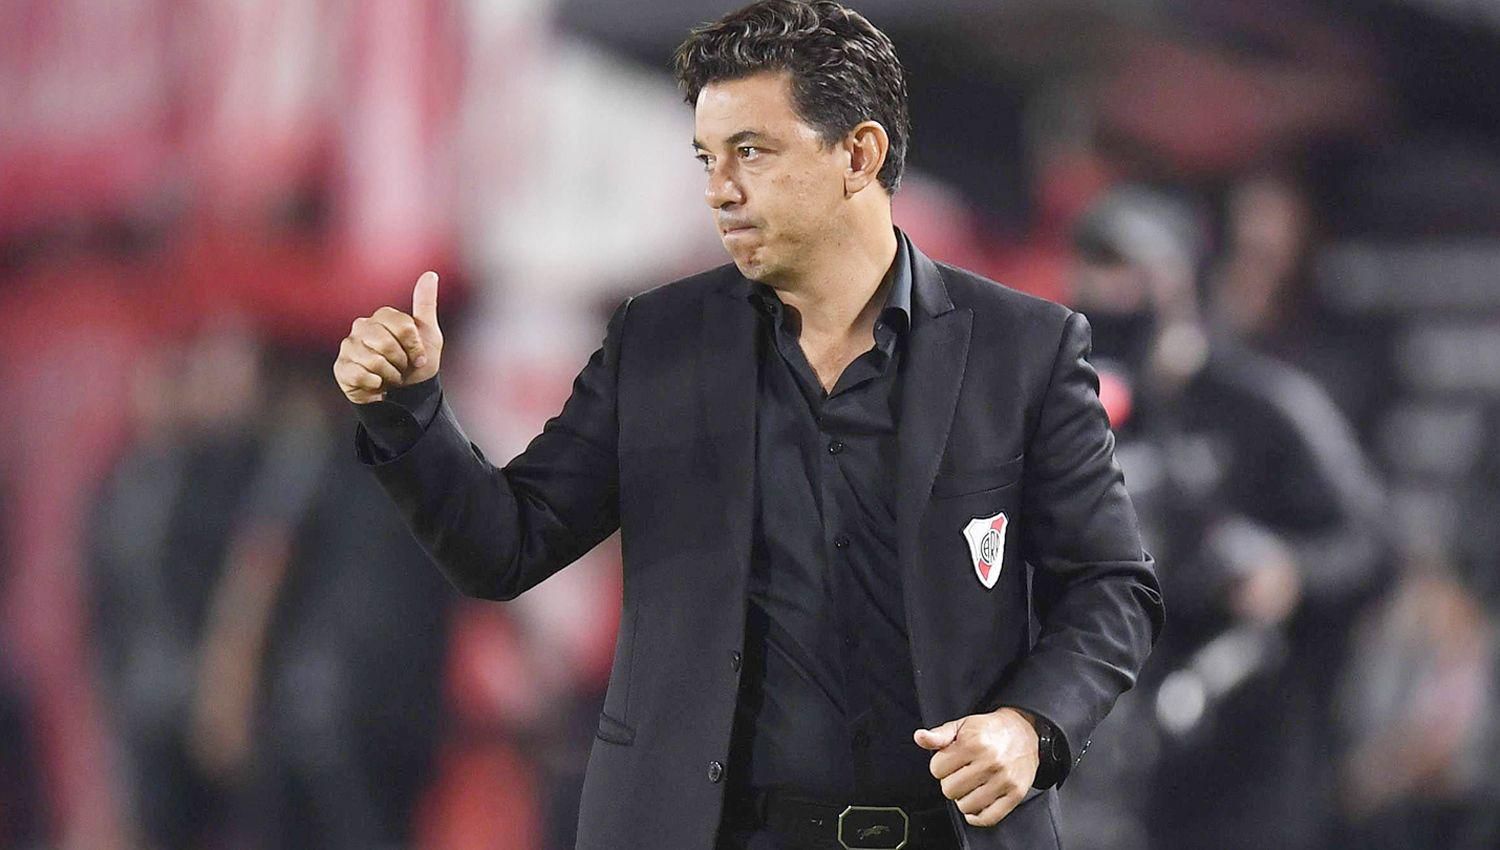 El entrenador de River Plate Marcelo Gallardo tiene motivos de sobra para hacerse acreedor al segundo puesto que le otorgó Club World Ranking